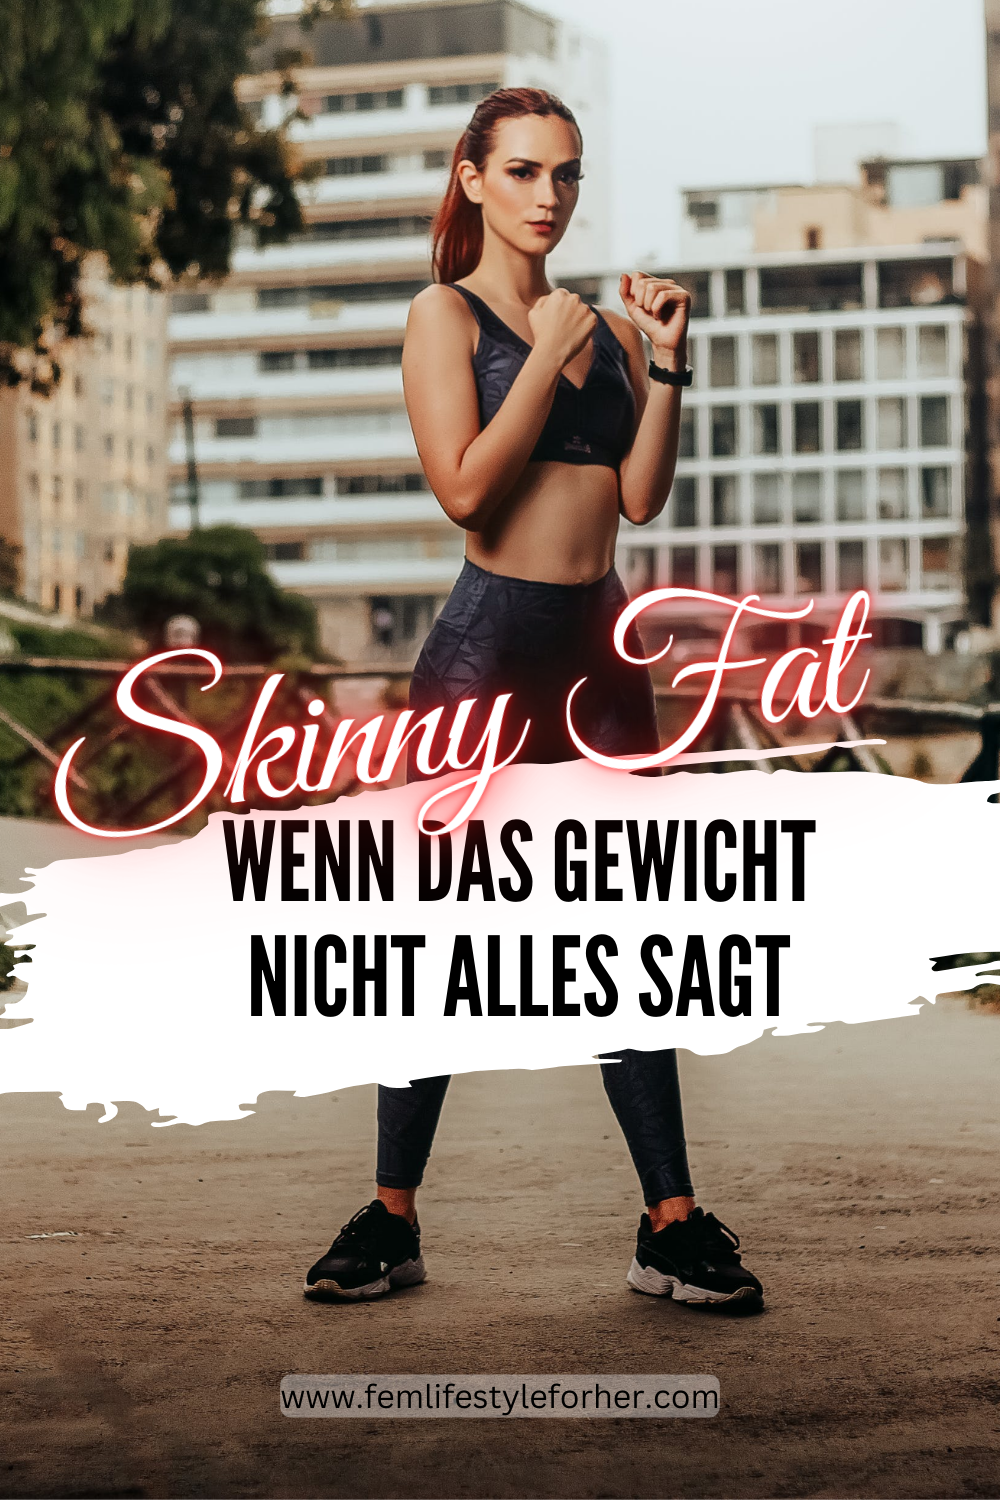 Slinny Fat